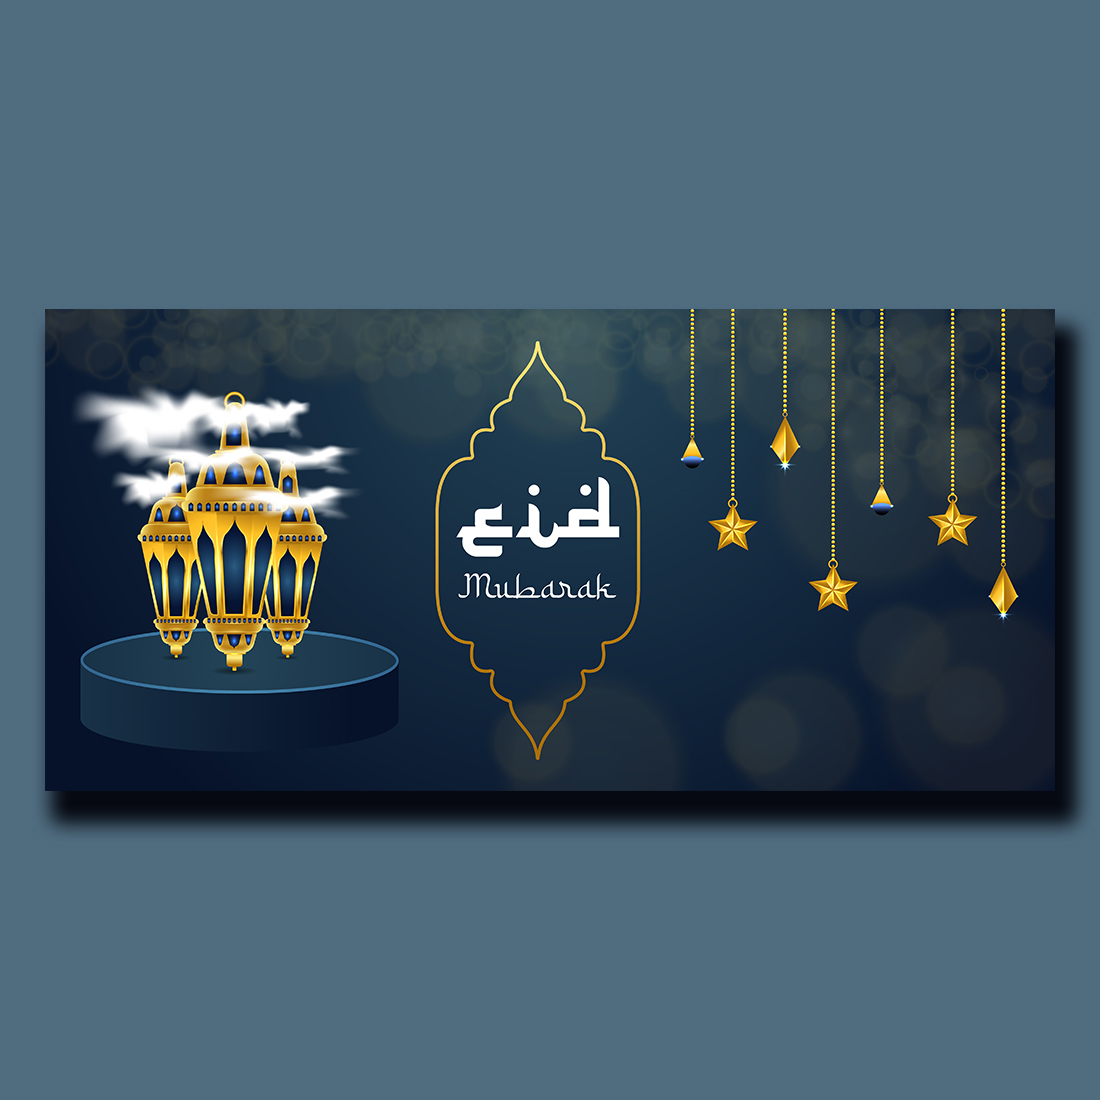 Eid Mubarak Greeting Islamic Background cover image.